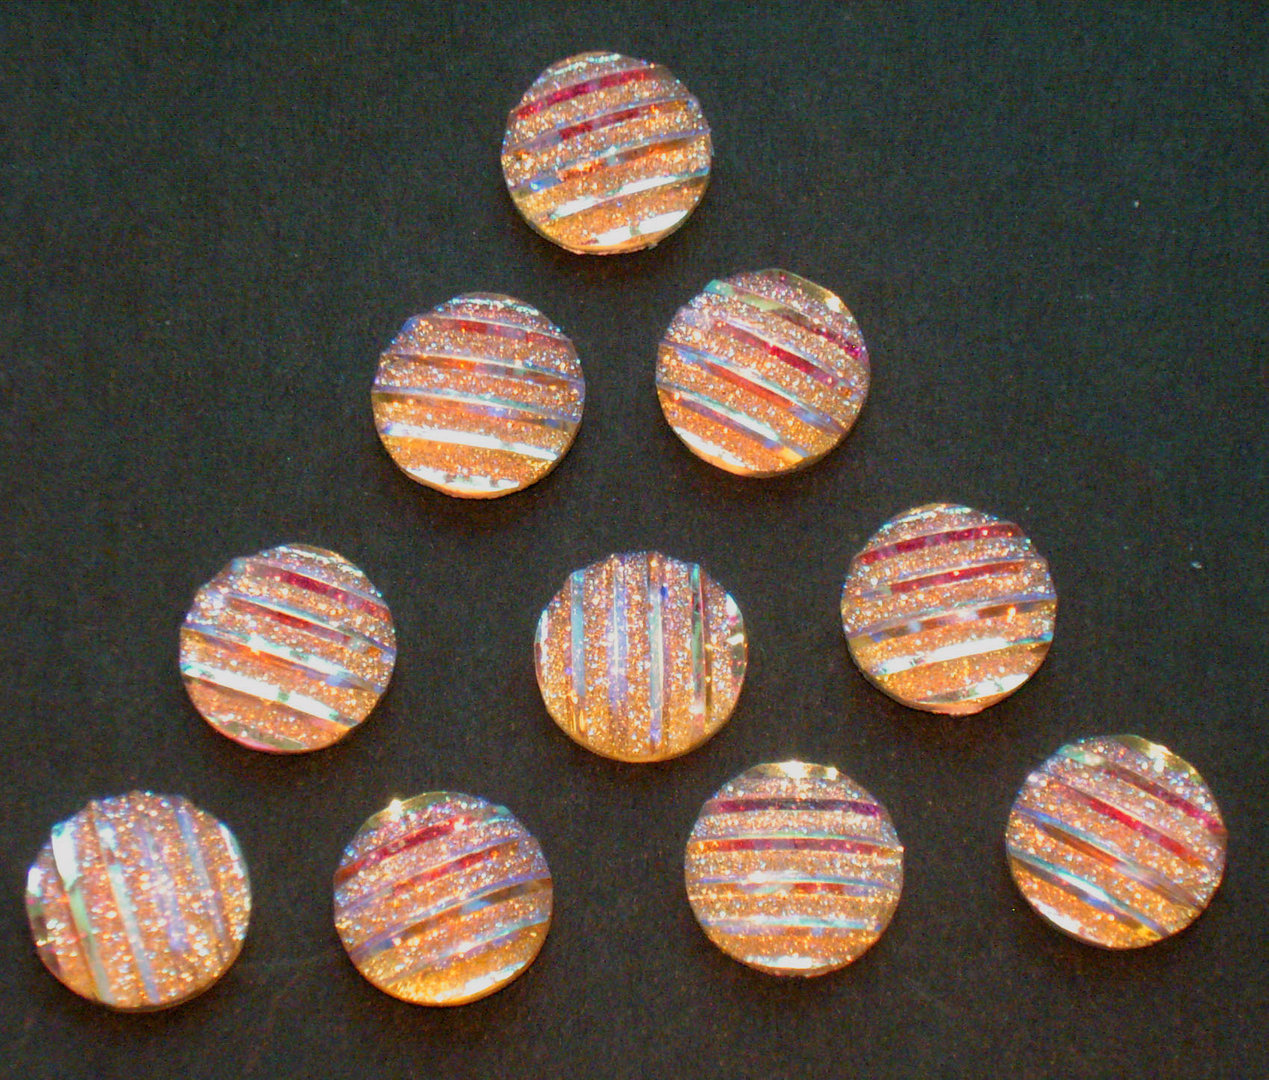 10 Schmuck Deko Steine Orange changierend mit Glitzer - Effekten Rückseite Silber Ø 9,5mm x 2mm